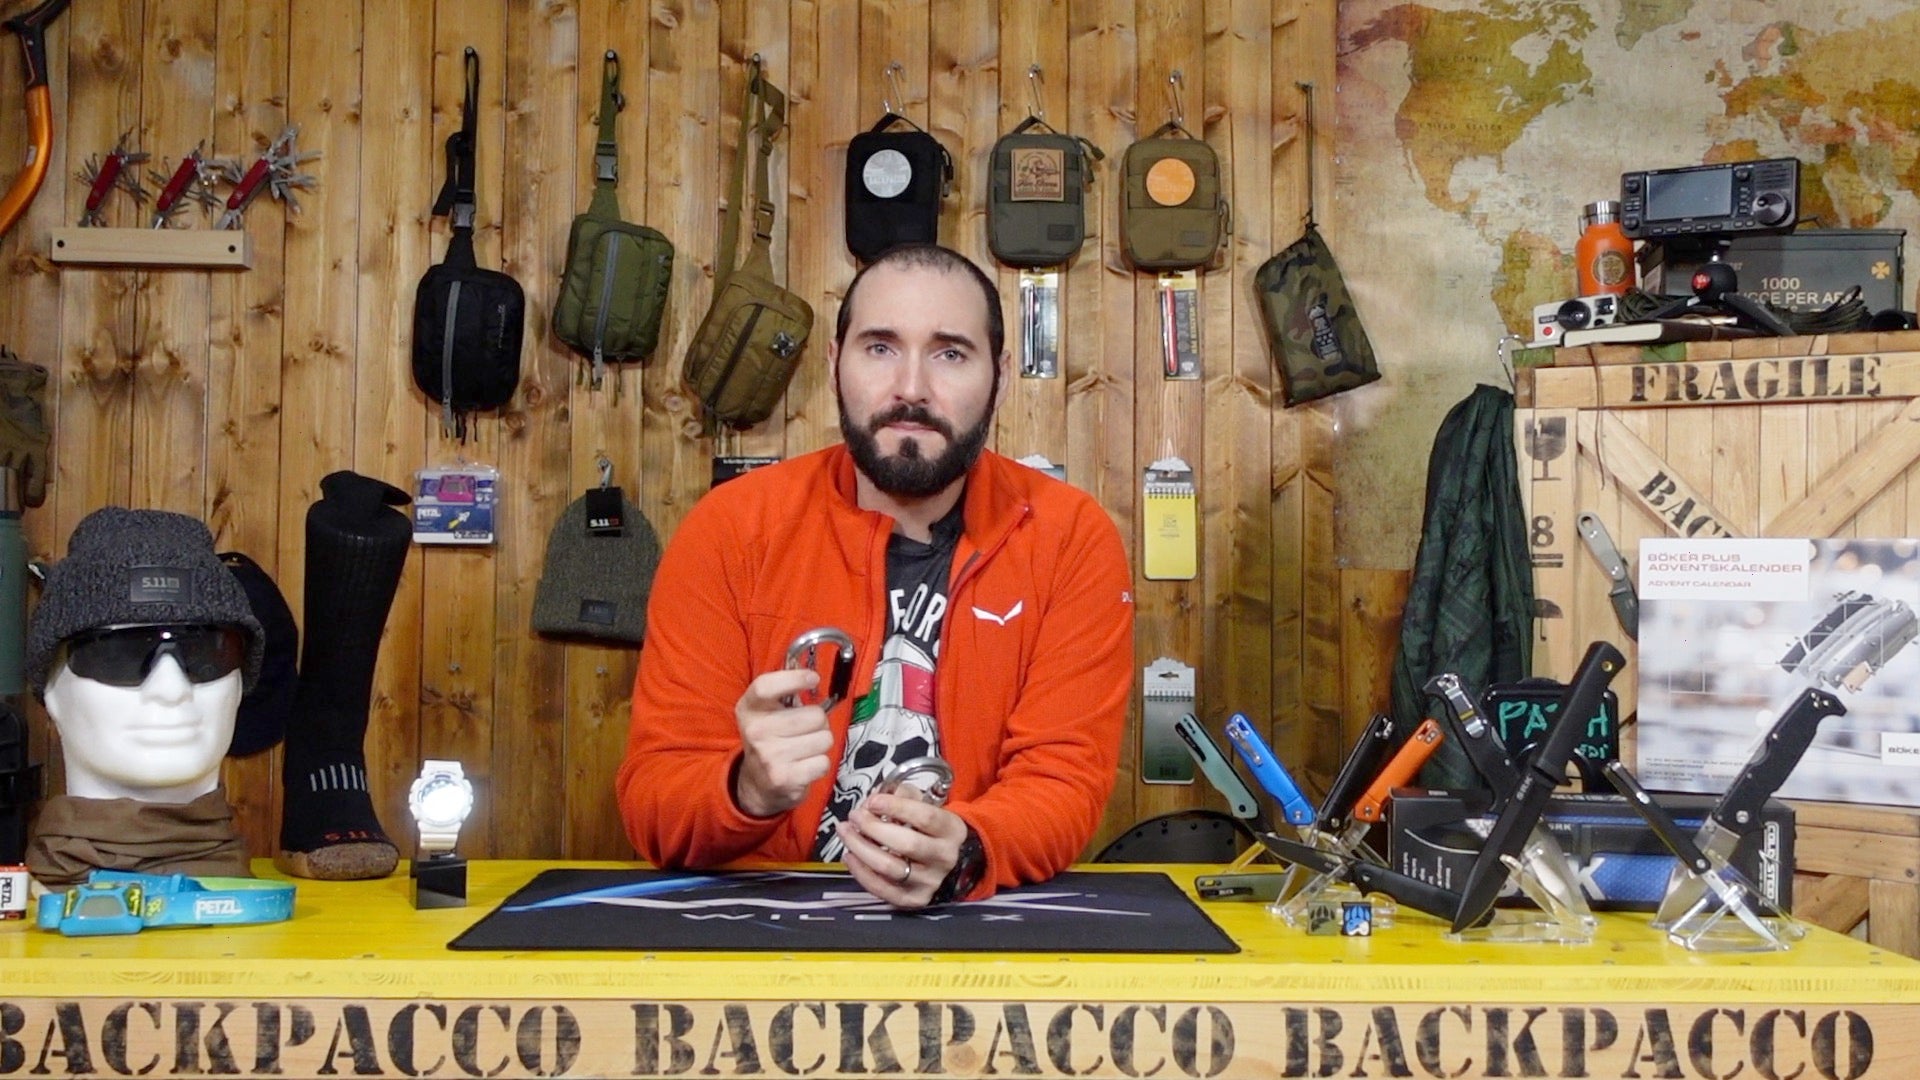 Paolo di Backpacco spiega il moschettone ok di petzl